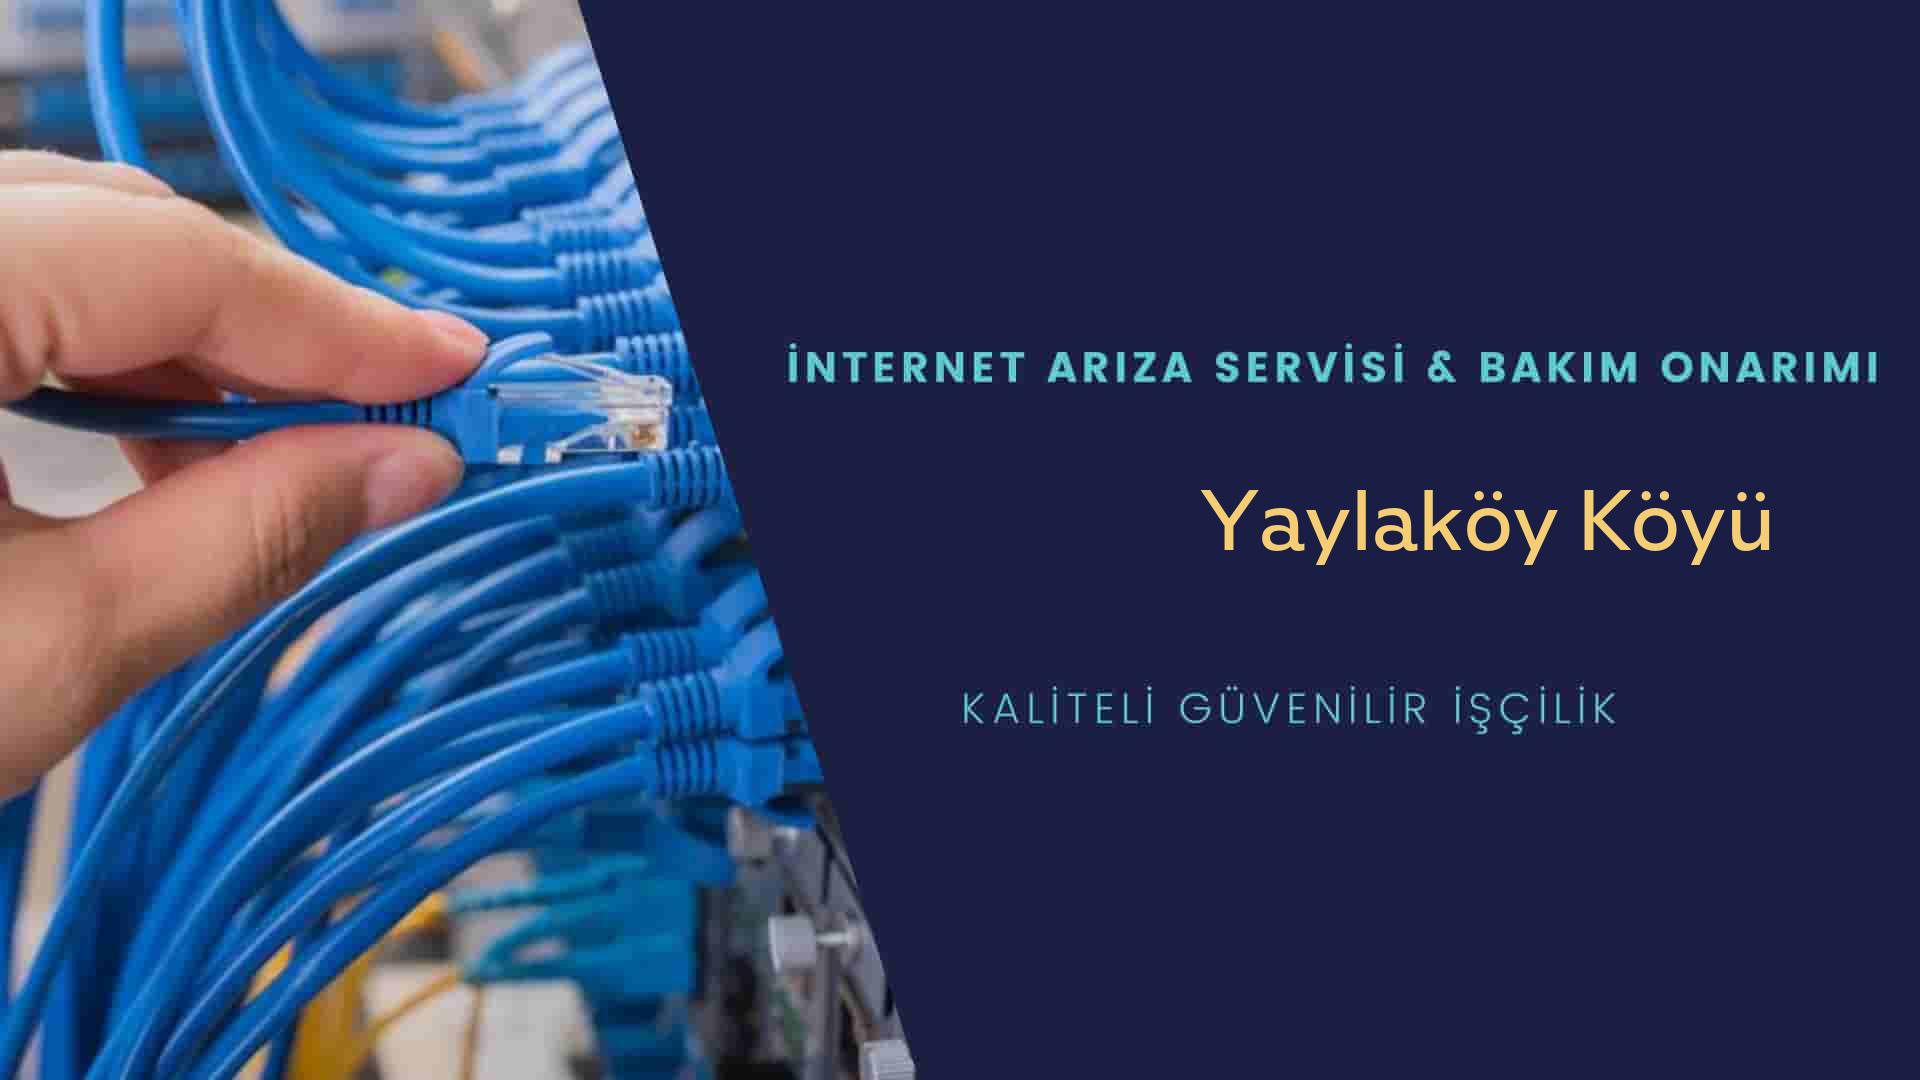 Yaylaköy Köyü internet kablosu çekimi yapan yerler veya elektrikçiler mi? arıyorsunuz doğru yerdesiniz o zaman sizlere 7/24 yardımcı olacak profesyonel ustalarımız bir telefon kadar yakındır size.